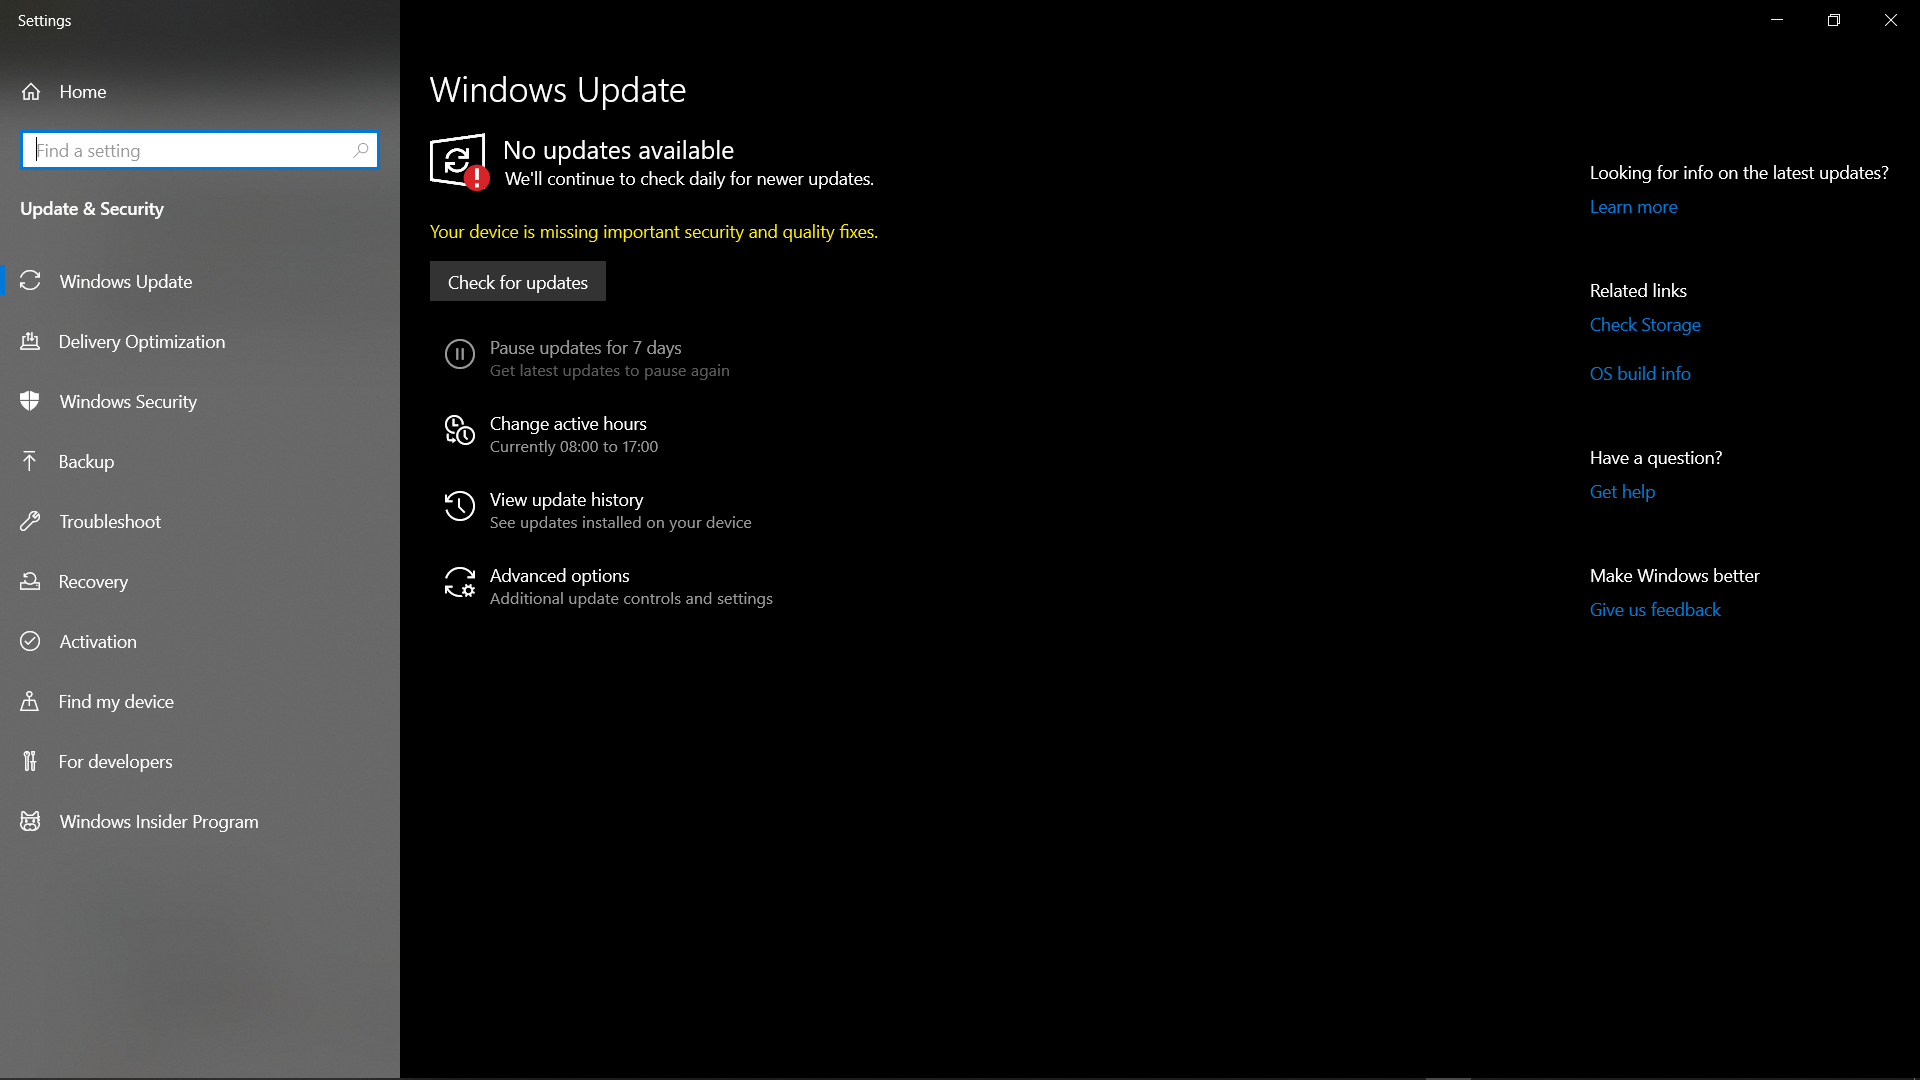 Windows updates not working 9d836fb7-9b1f-40f2-b26c-b05ba20242b1?upload=true.png